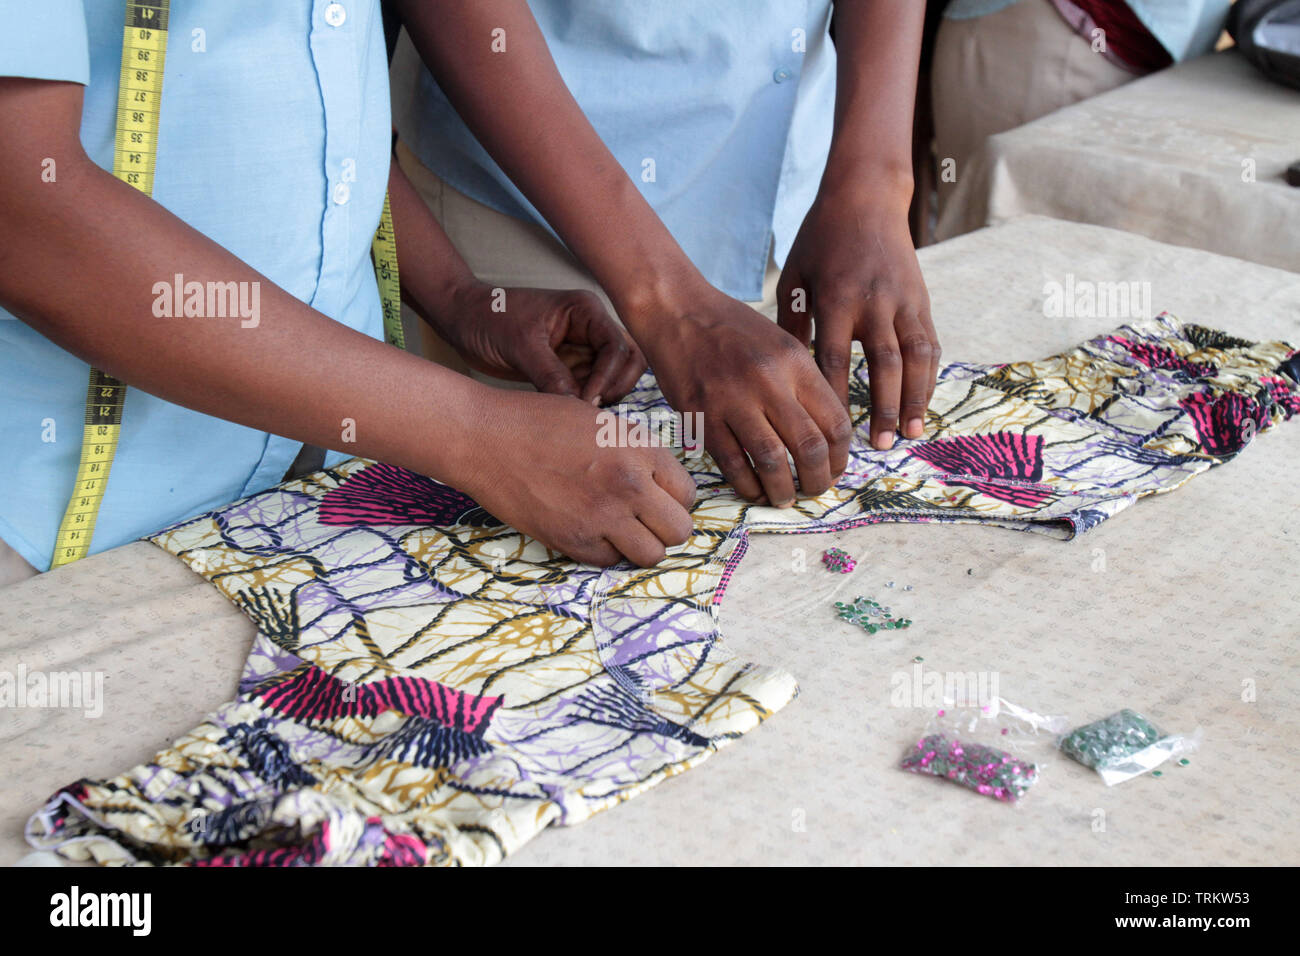 Atelier de couture. Formazione. La convenzione di Lomé. Il Togo. Afrique de l'Ouest. Foto Stock